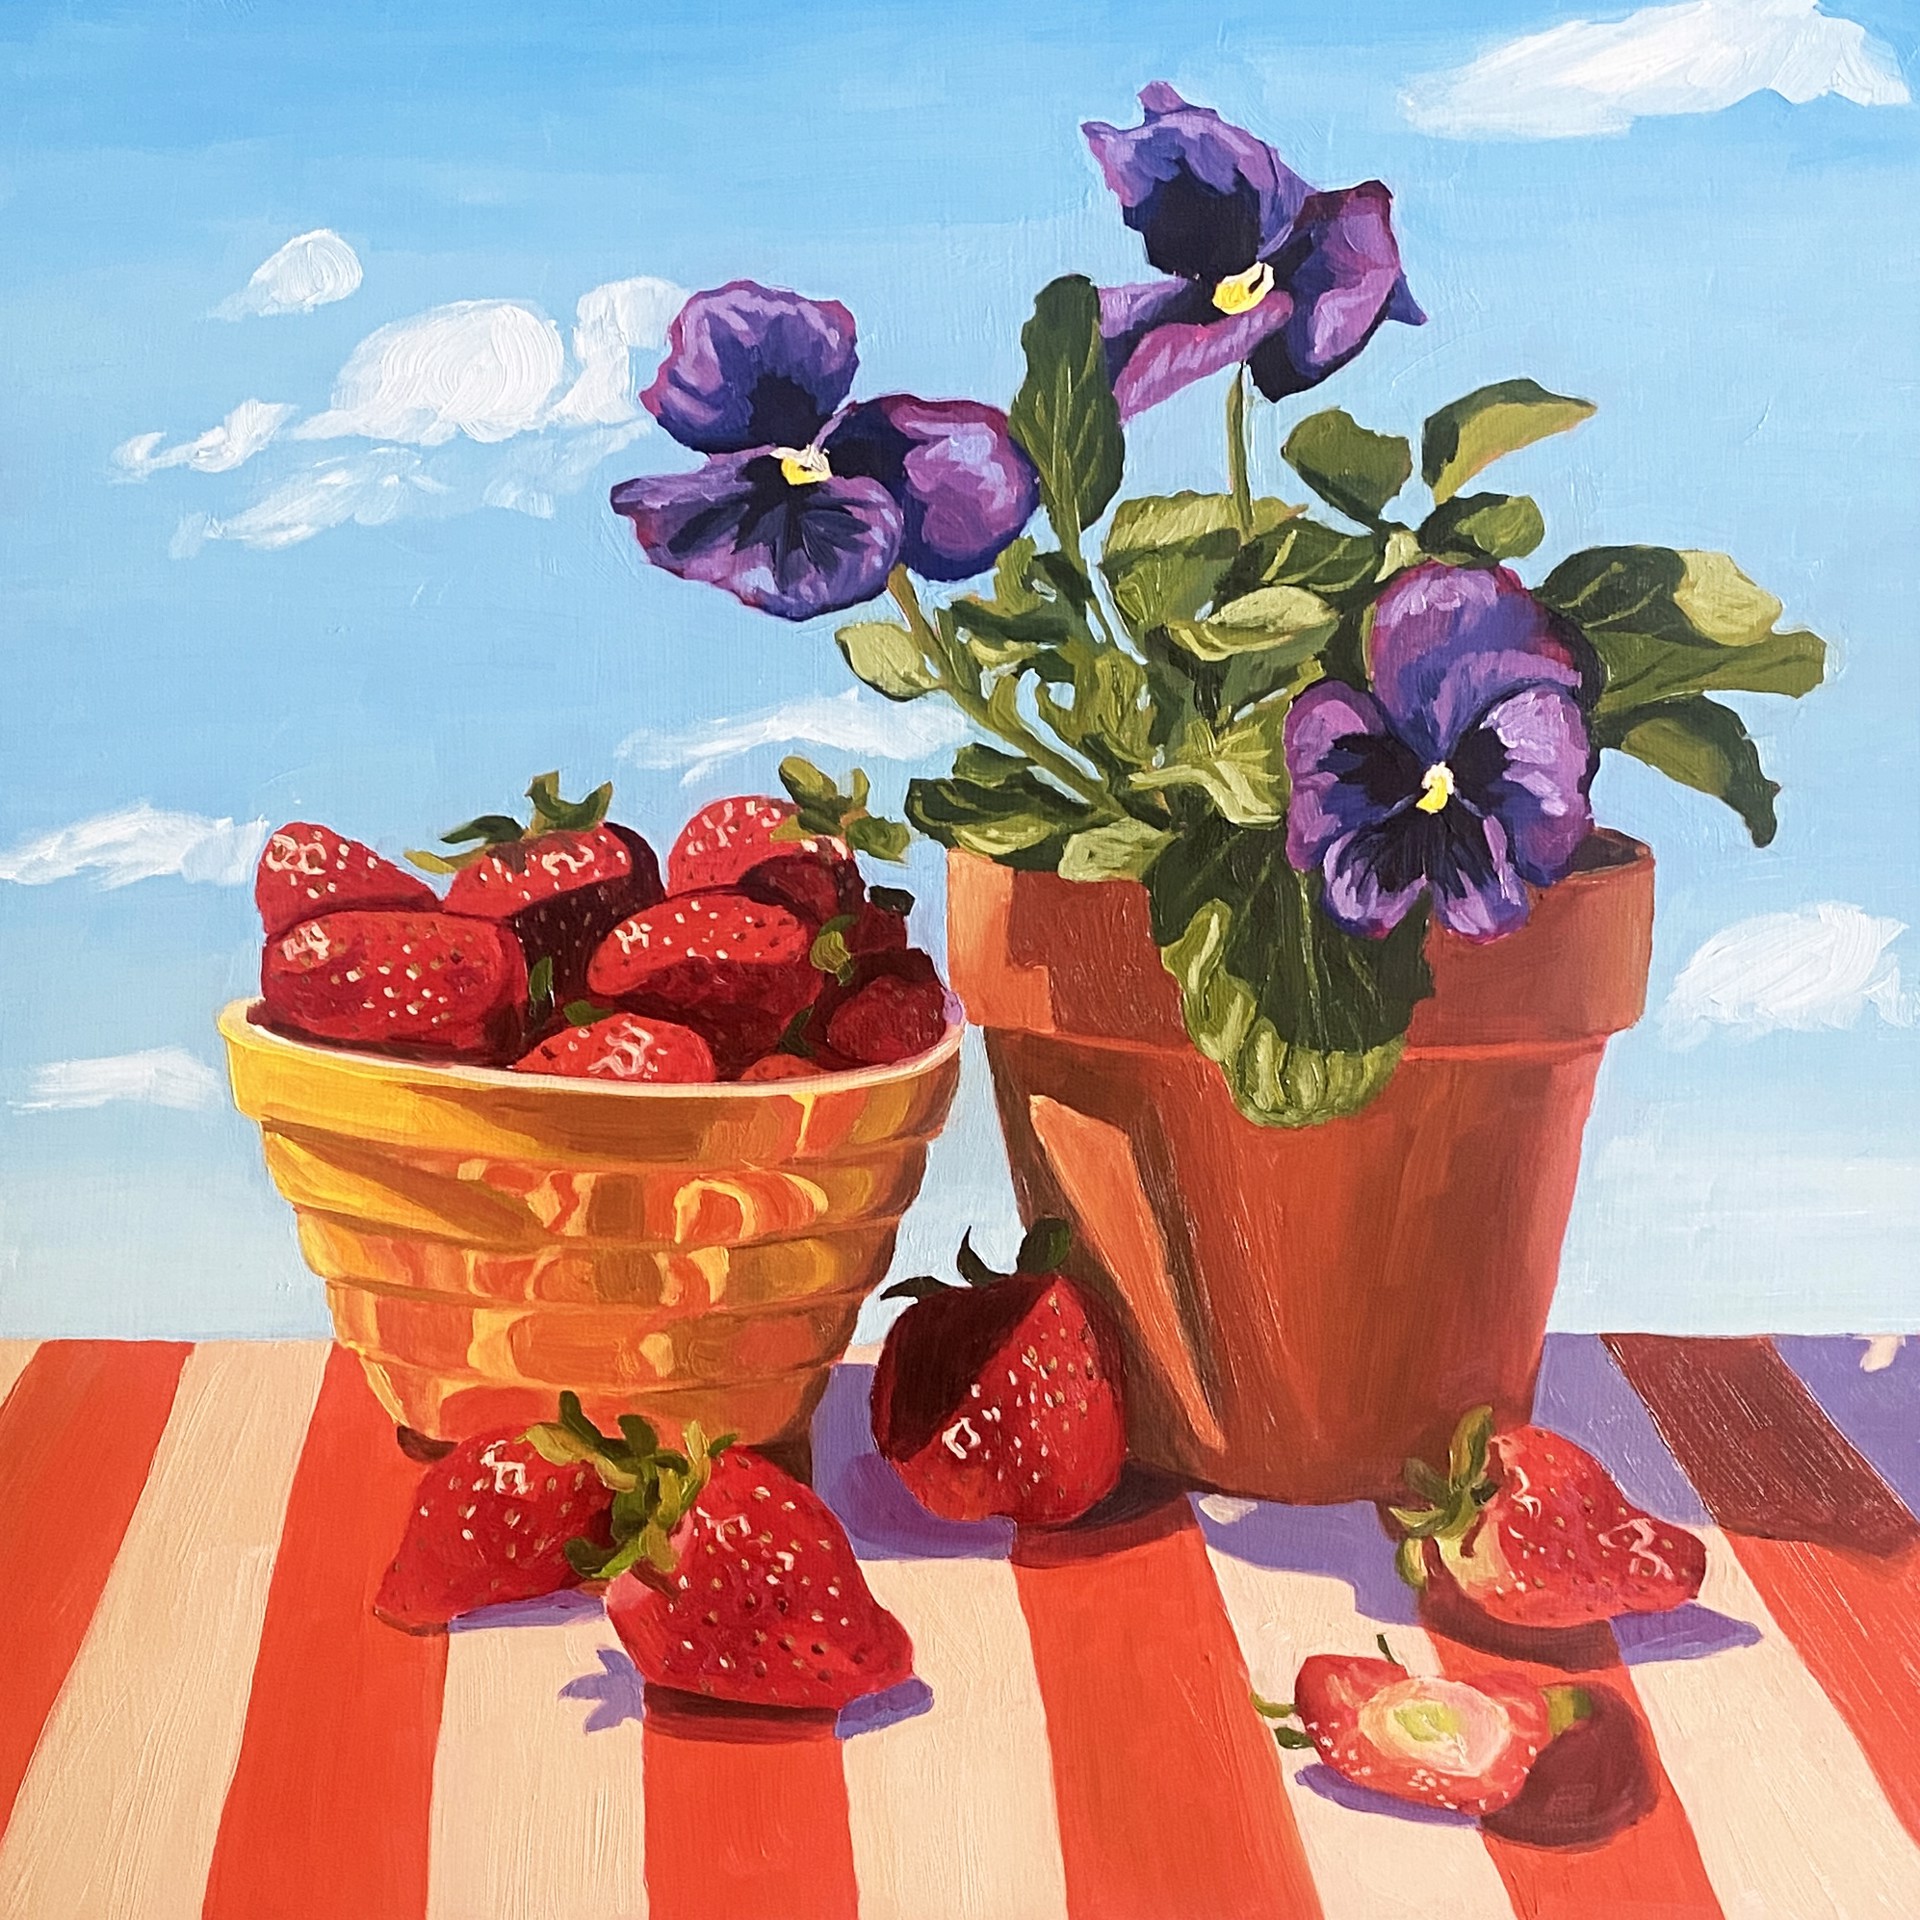 Summer Strawberries and Pansies by Bella Wattles